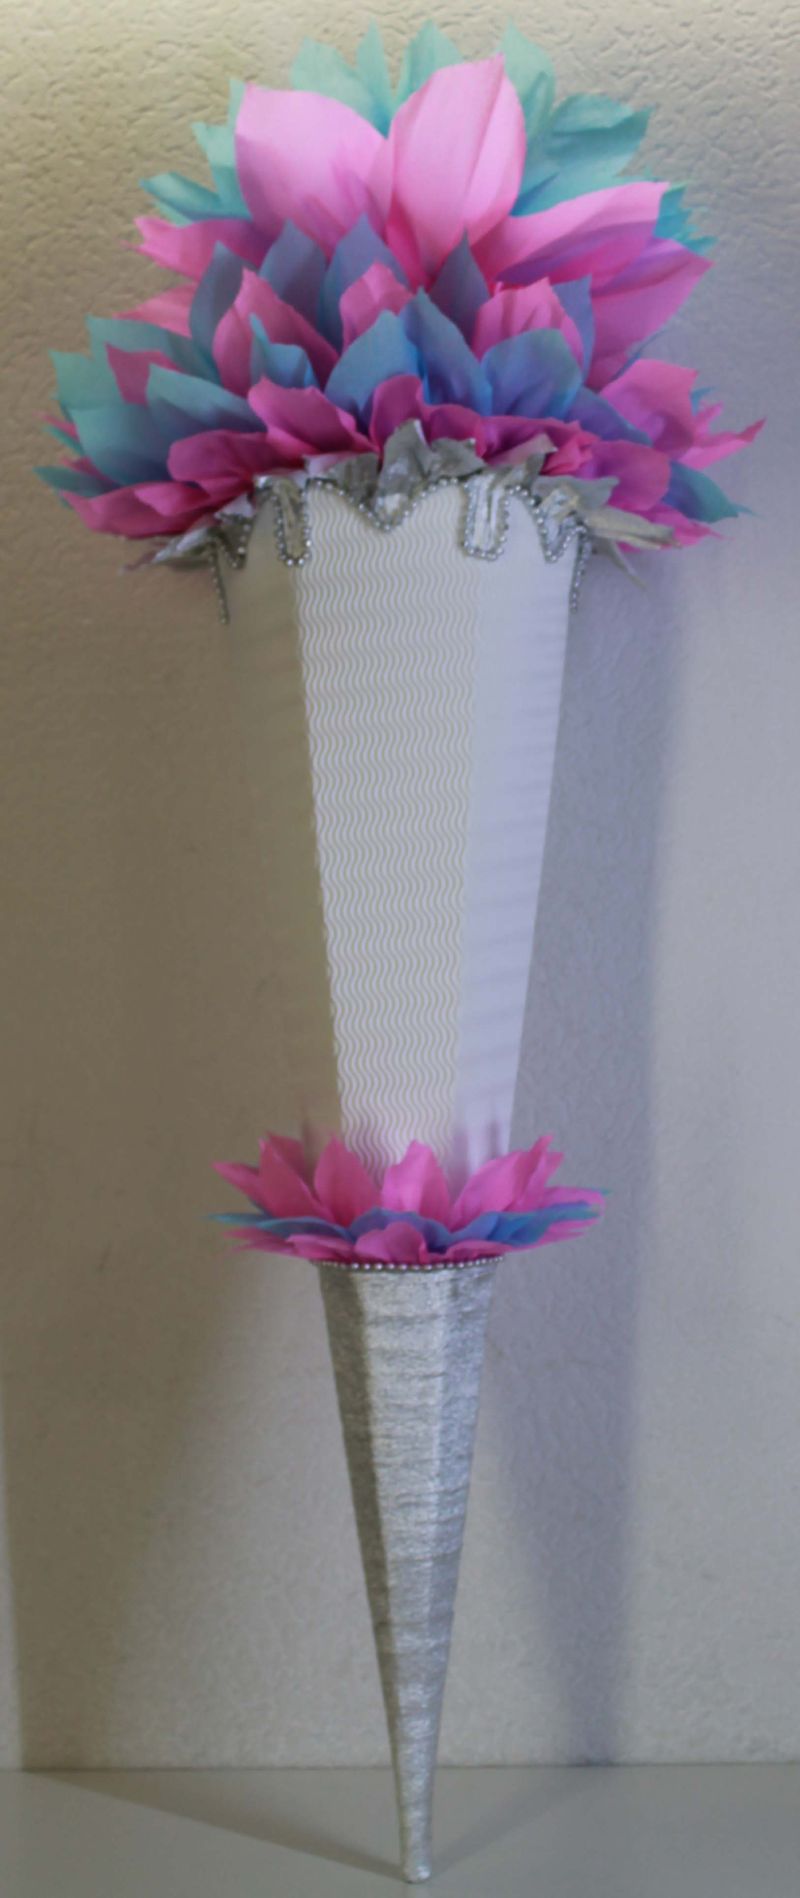  - Schultüte Zuckertüte Rohling zum selbst verzieren Rohling 70 75 80 85 90 100 cm / 1m für Mädchen HANDARBEIT rosa hellblau silber weiß